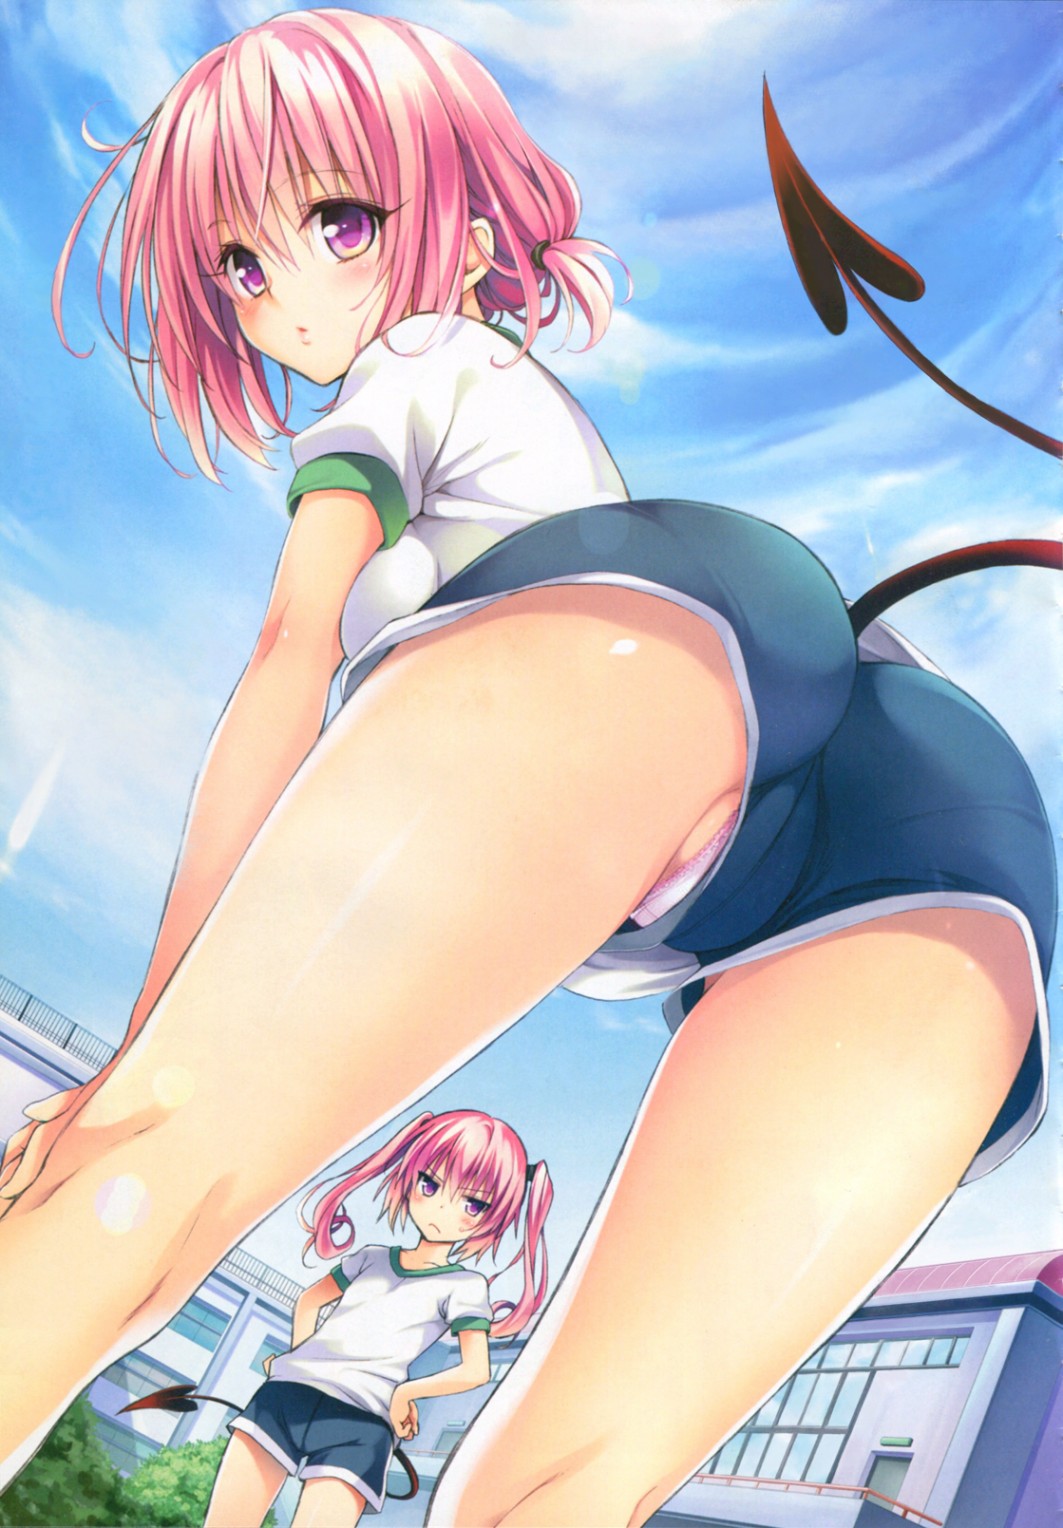 Anime Panties - Anime schoolgirl with tail pov upskirt up shorts panties ...